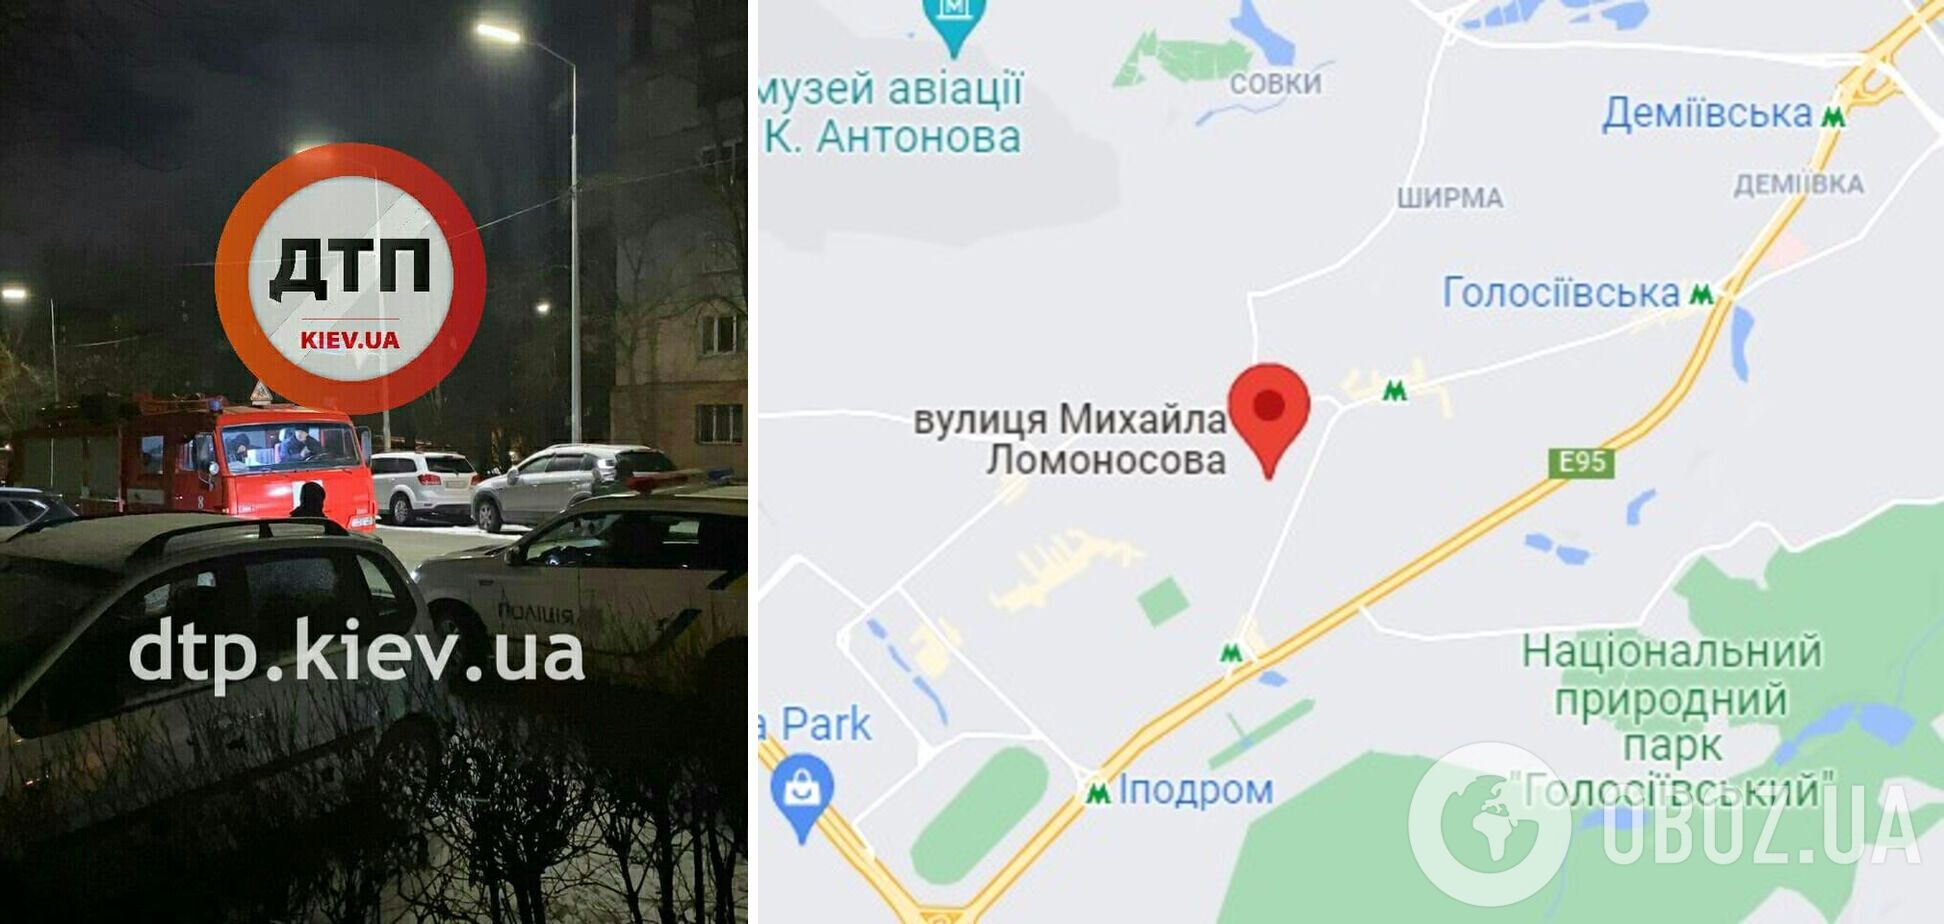 ЧП произошло на улице Ломоносова в Киеве